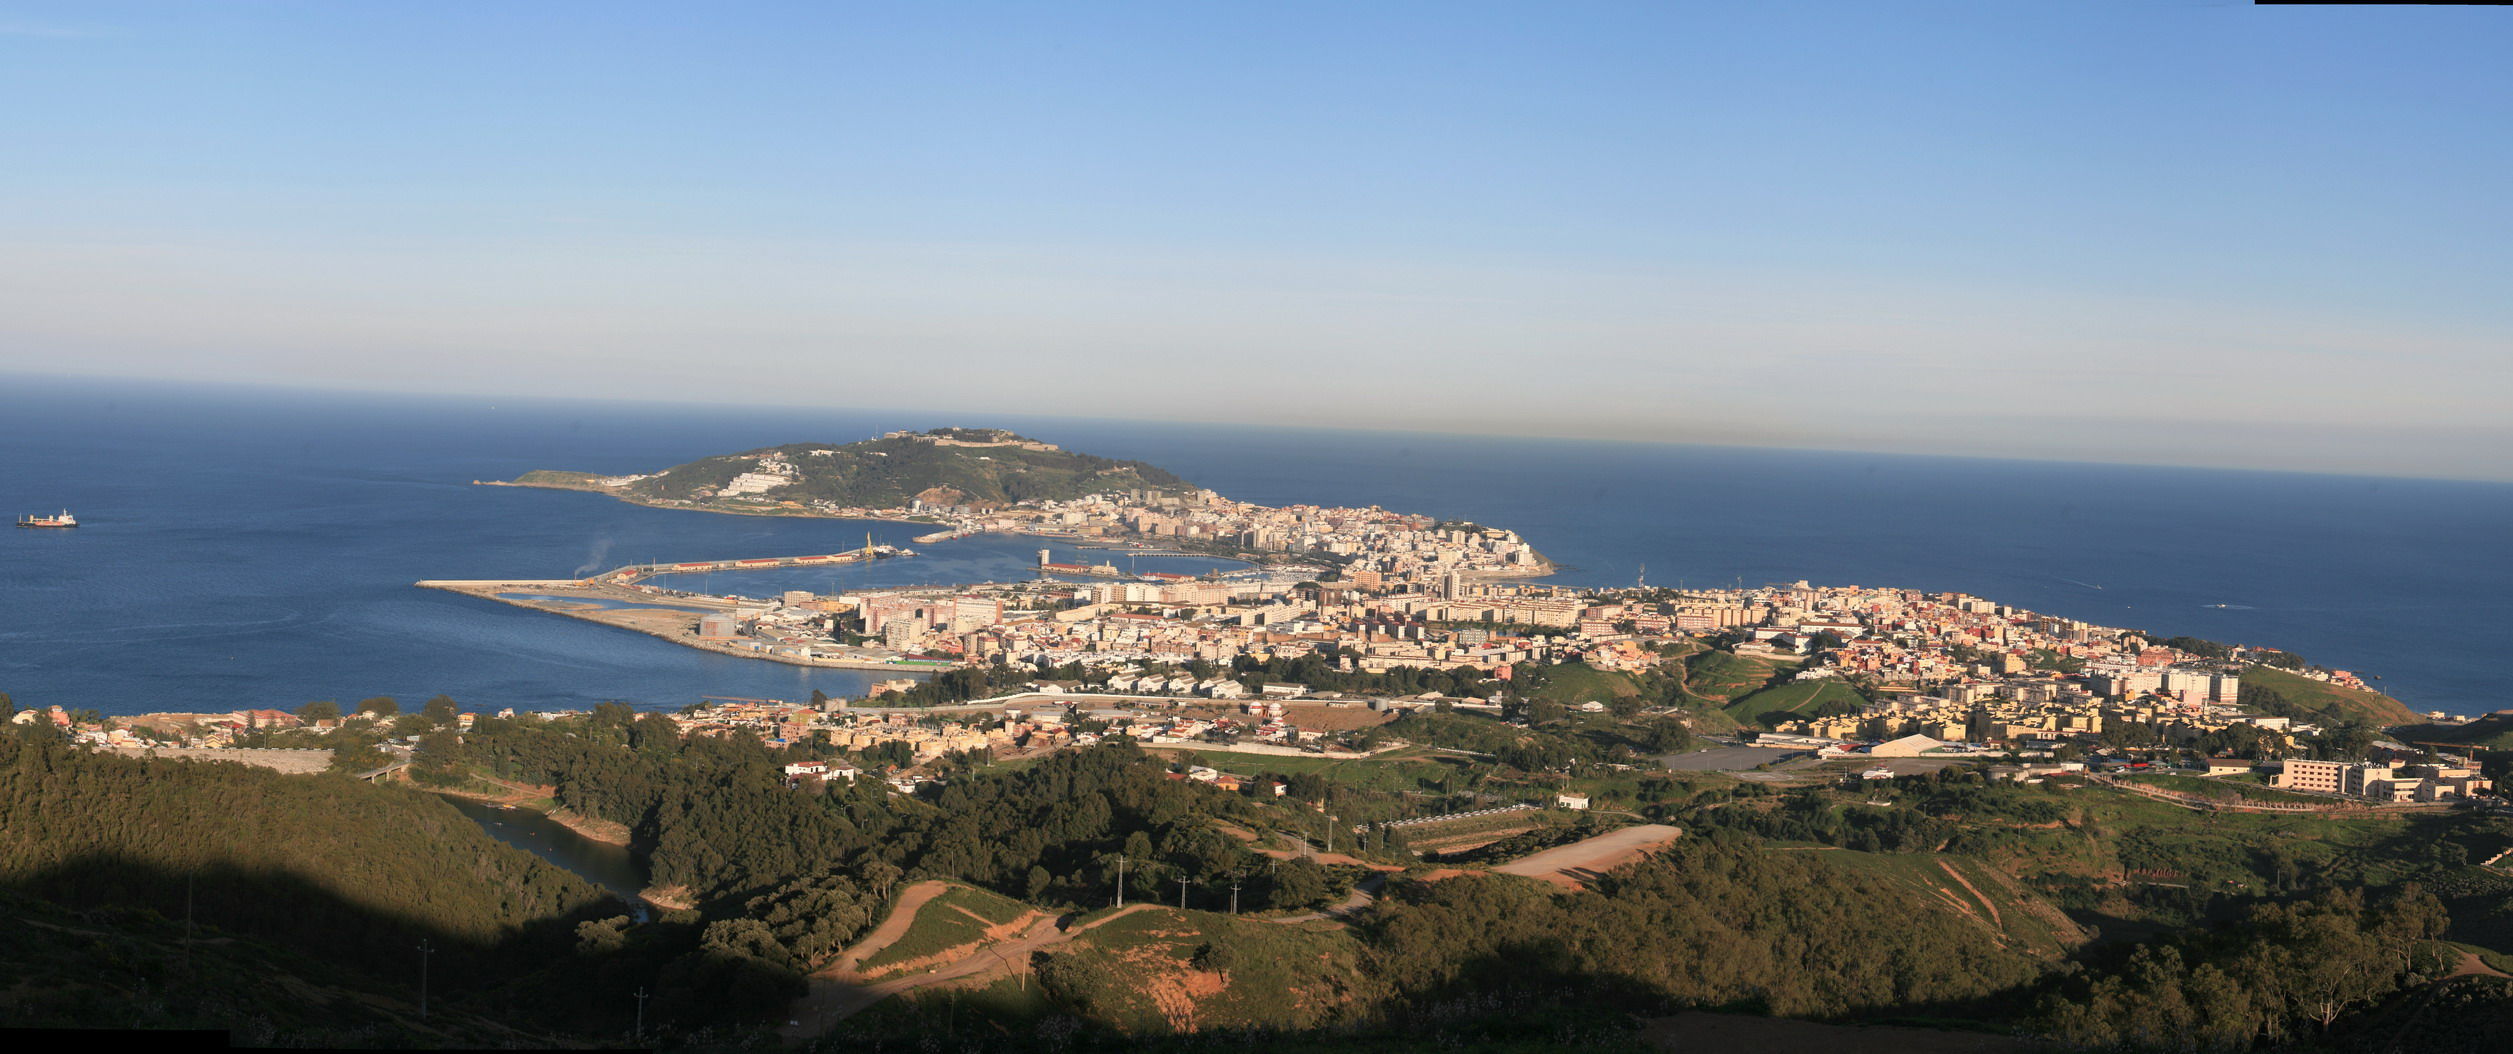 7479 - ¿Cuánto sabes de Ceuta?